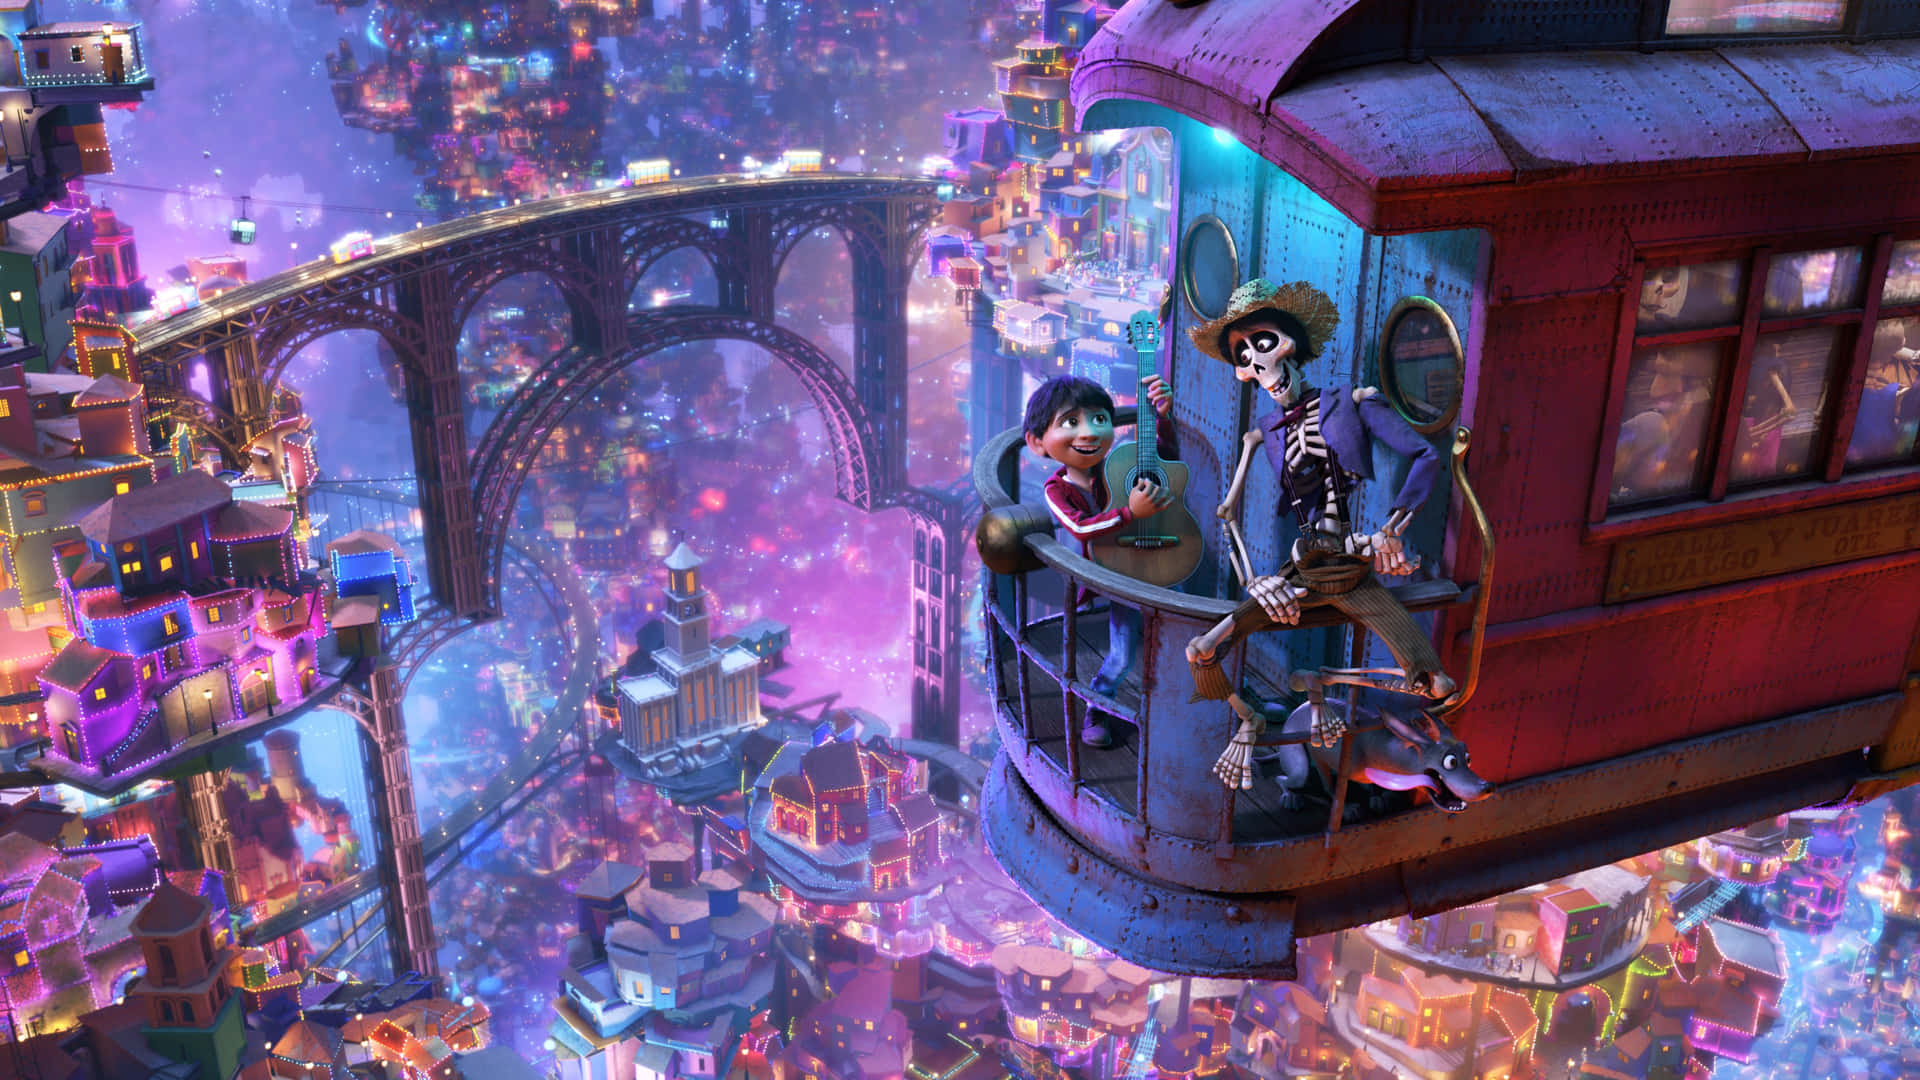 Disneypixars Coco Inspirerar Generationer Med Sin Magiska Berättelse. Wallpaper